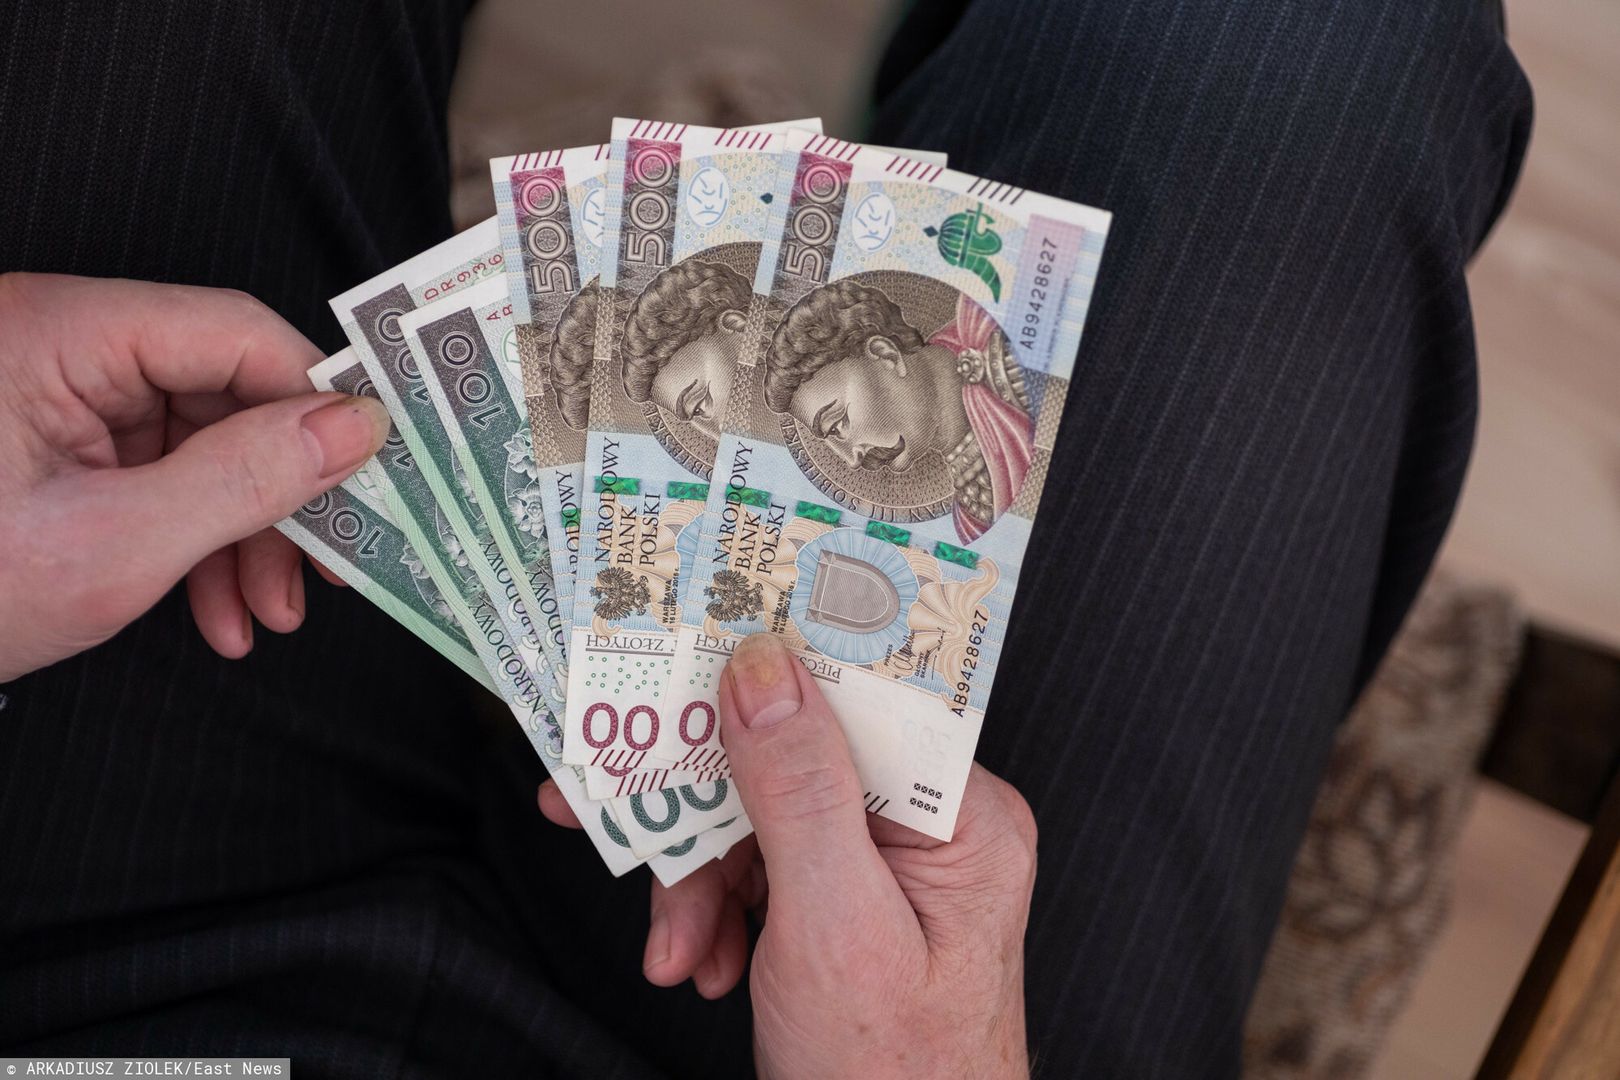 Banknot widmo. 500 zł w obiegu, choć trafić na niego niełatwo